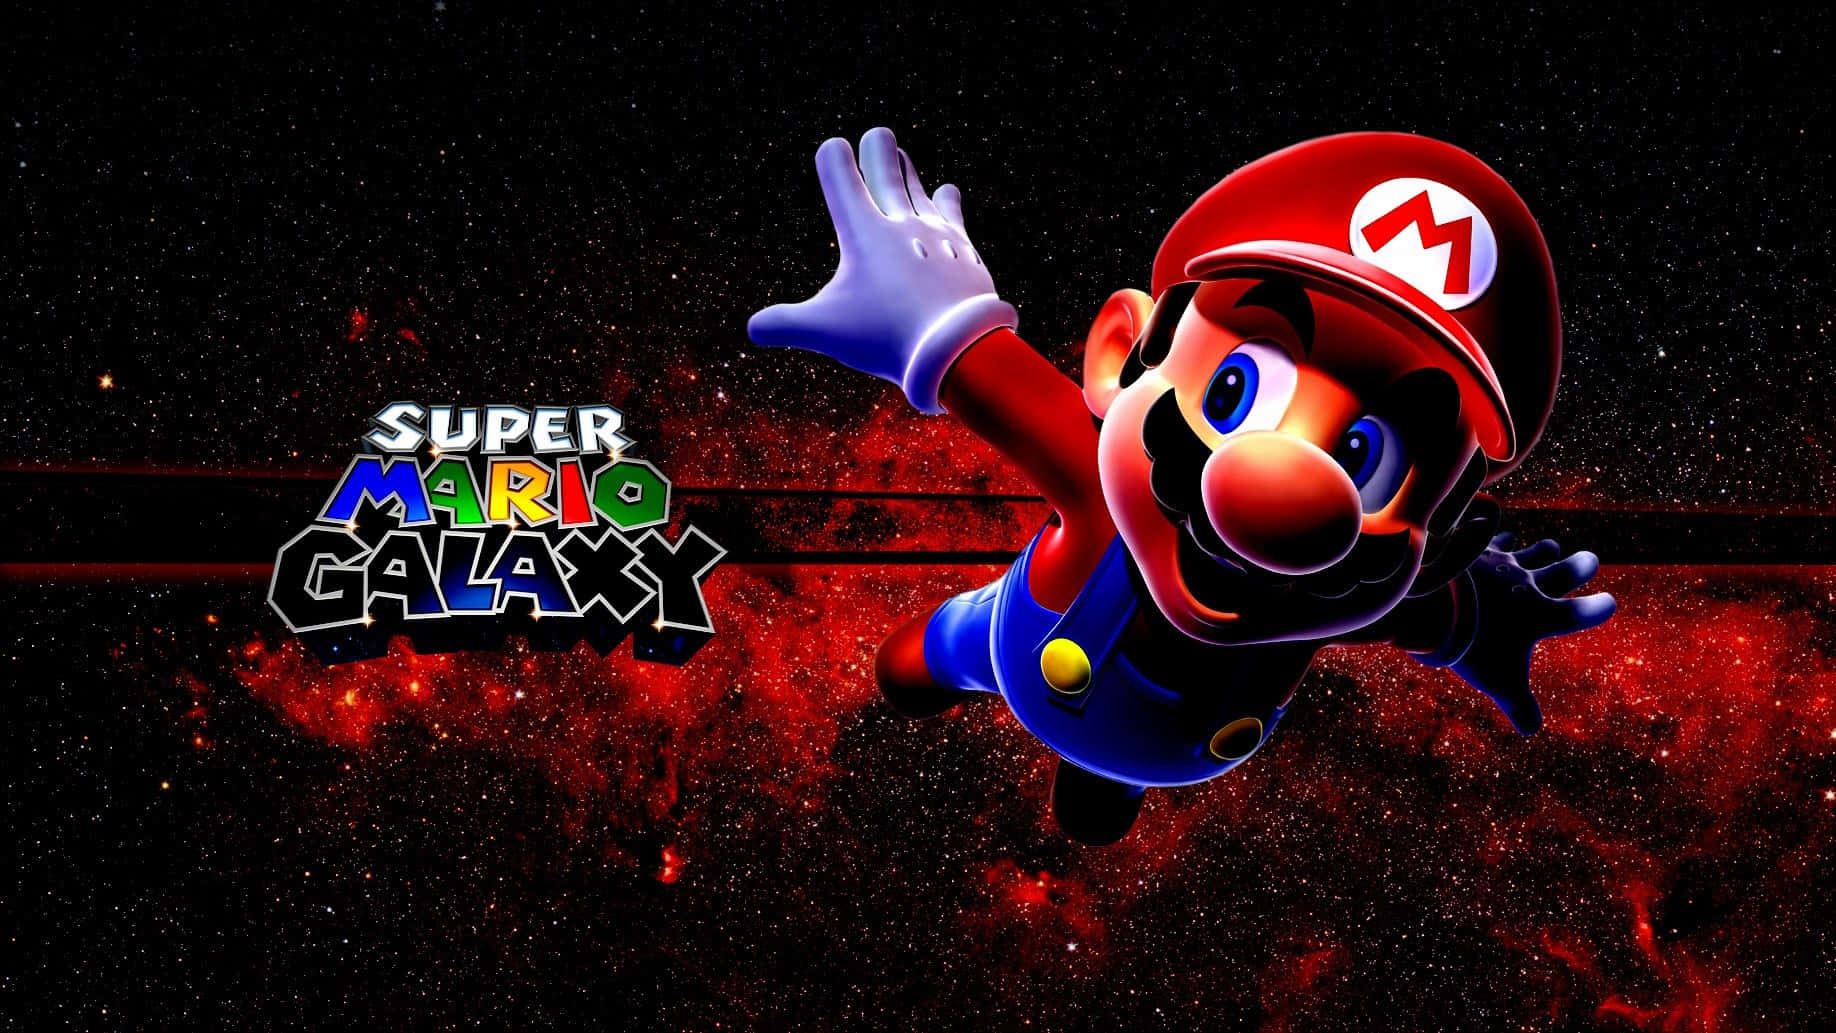 Följmed Mario På Ett Intergalaktiskt Äventyr Med Super Mario Galaxy. Wallpaper